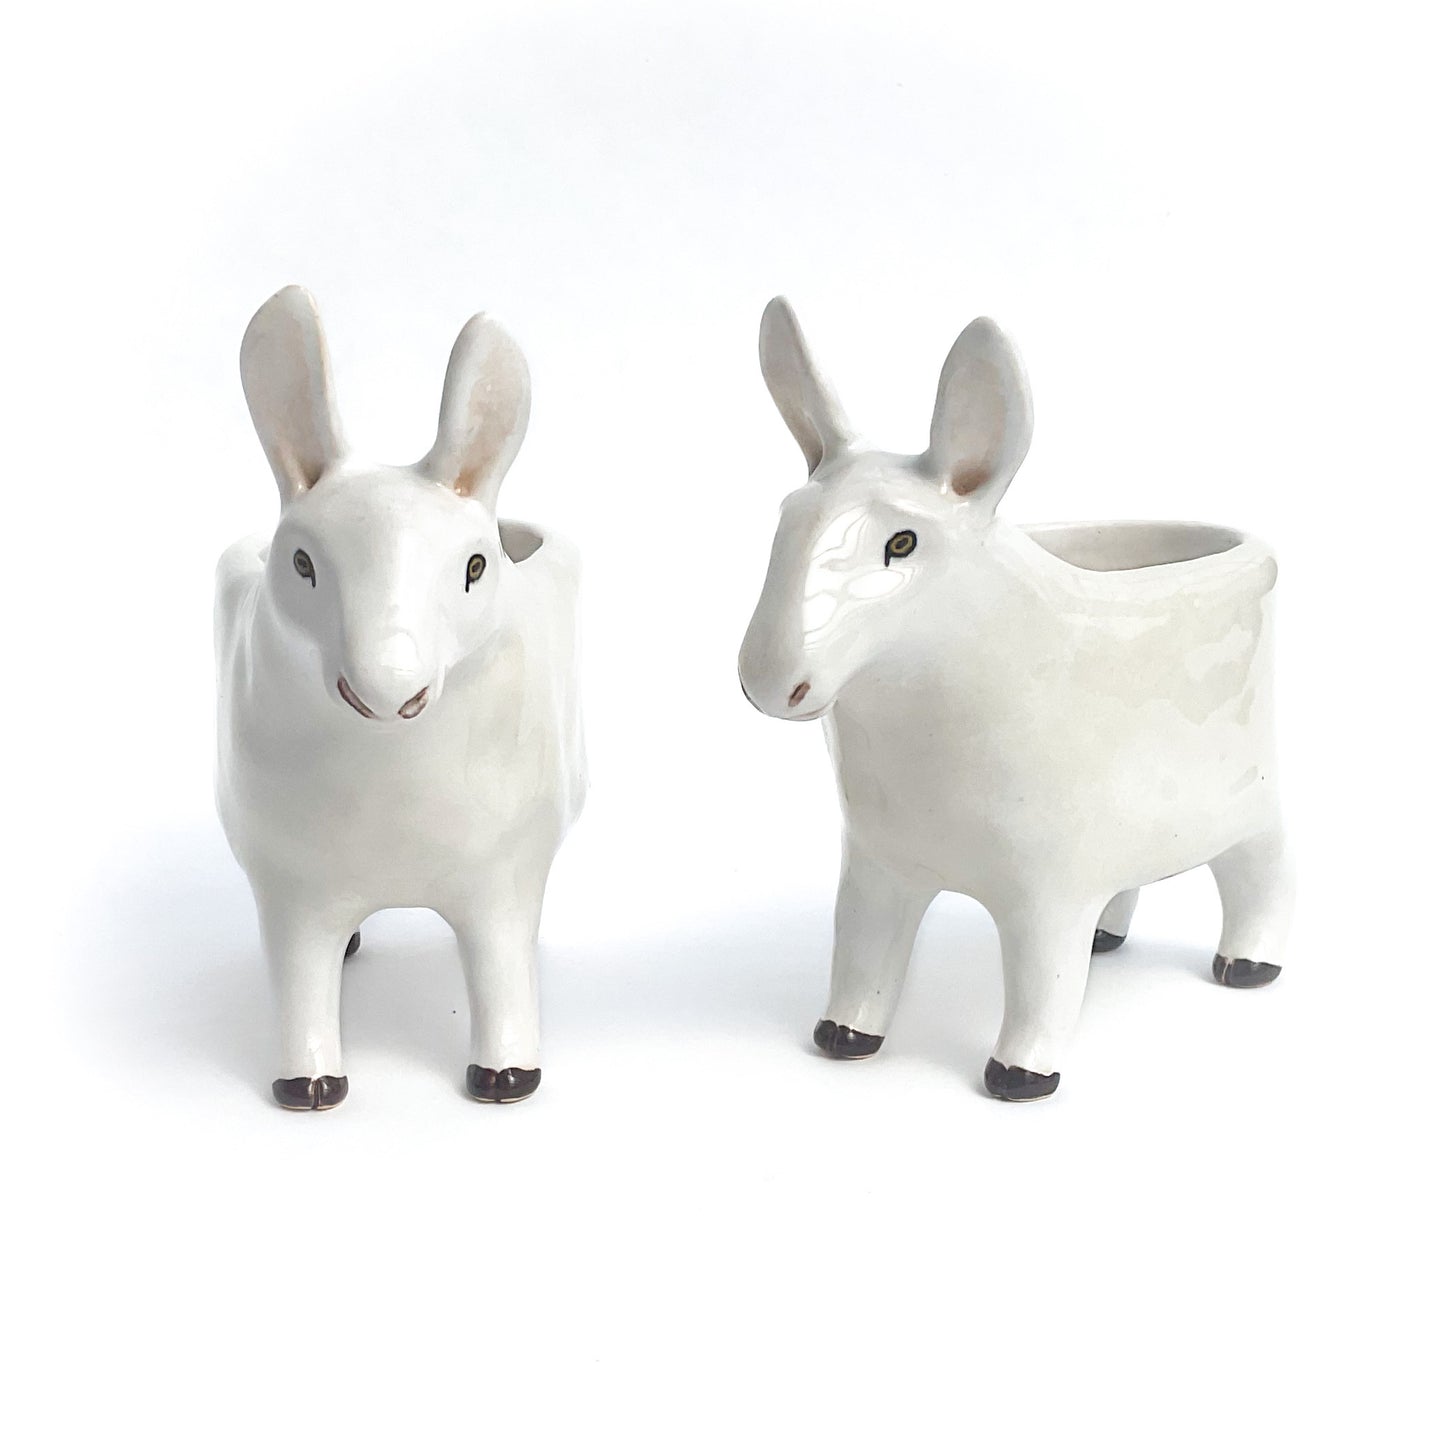 Border Leicester Sheep Pot - Ceramic Sheep Planter